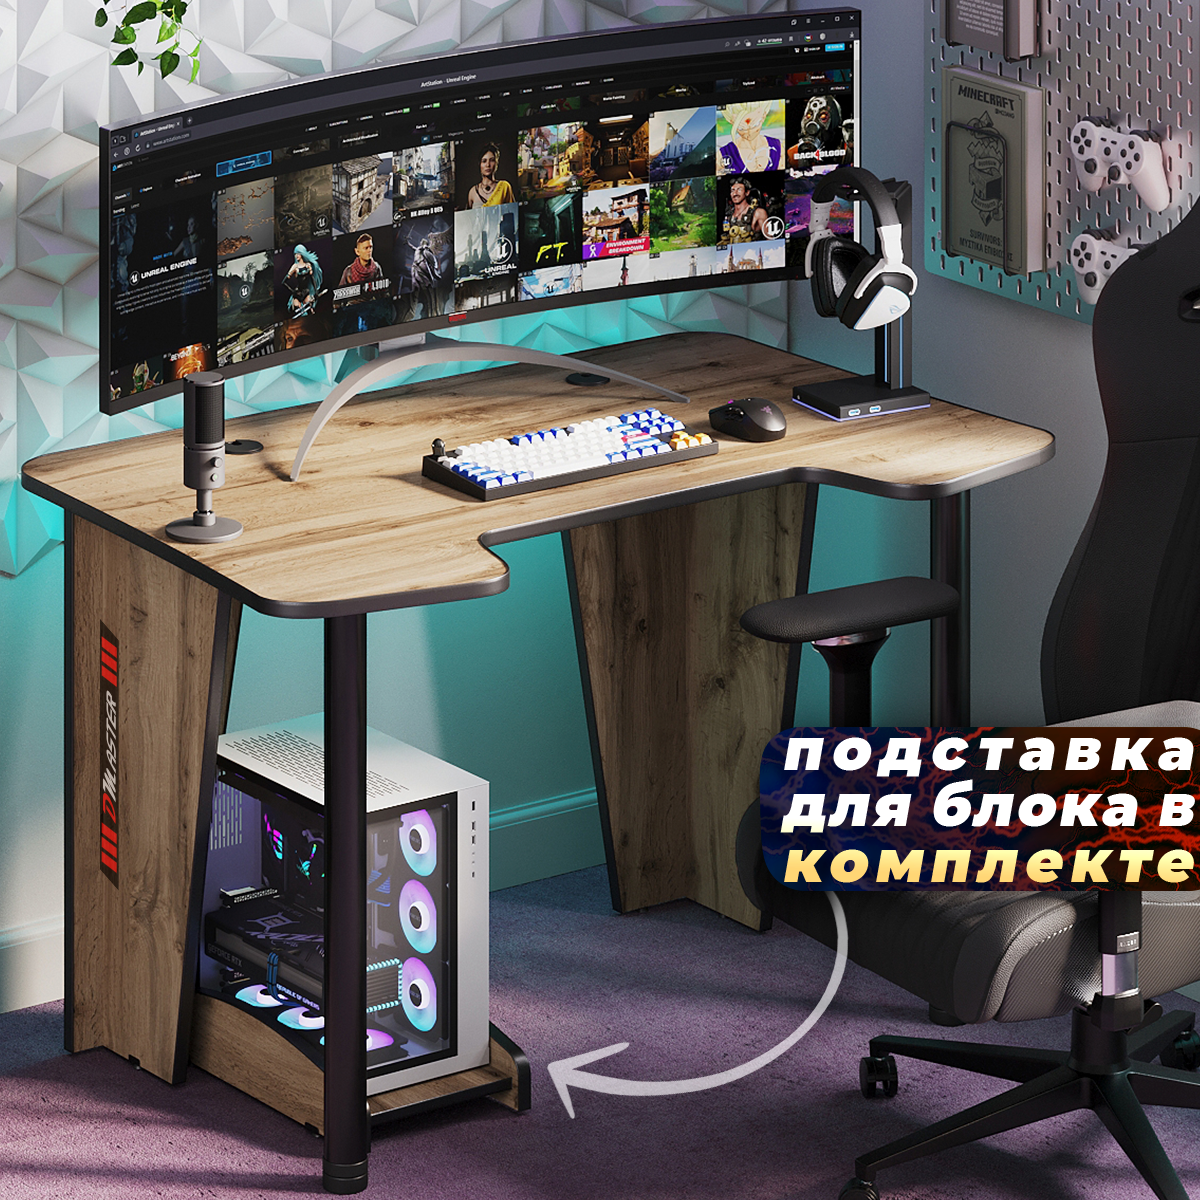 Геймерский компьютерный игровой стол и подставка под блок черный-синий / дэн-мастер / офисный, письменный стол для компьютера пк